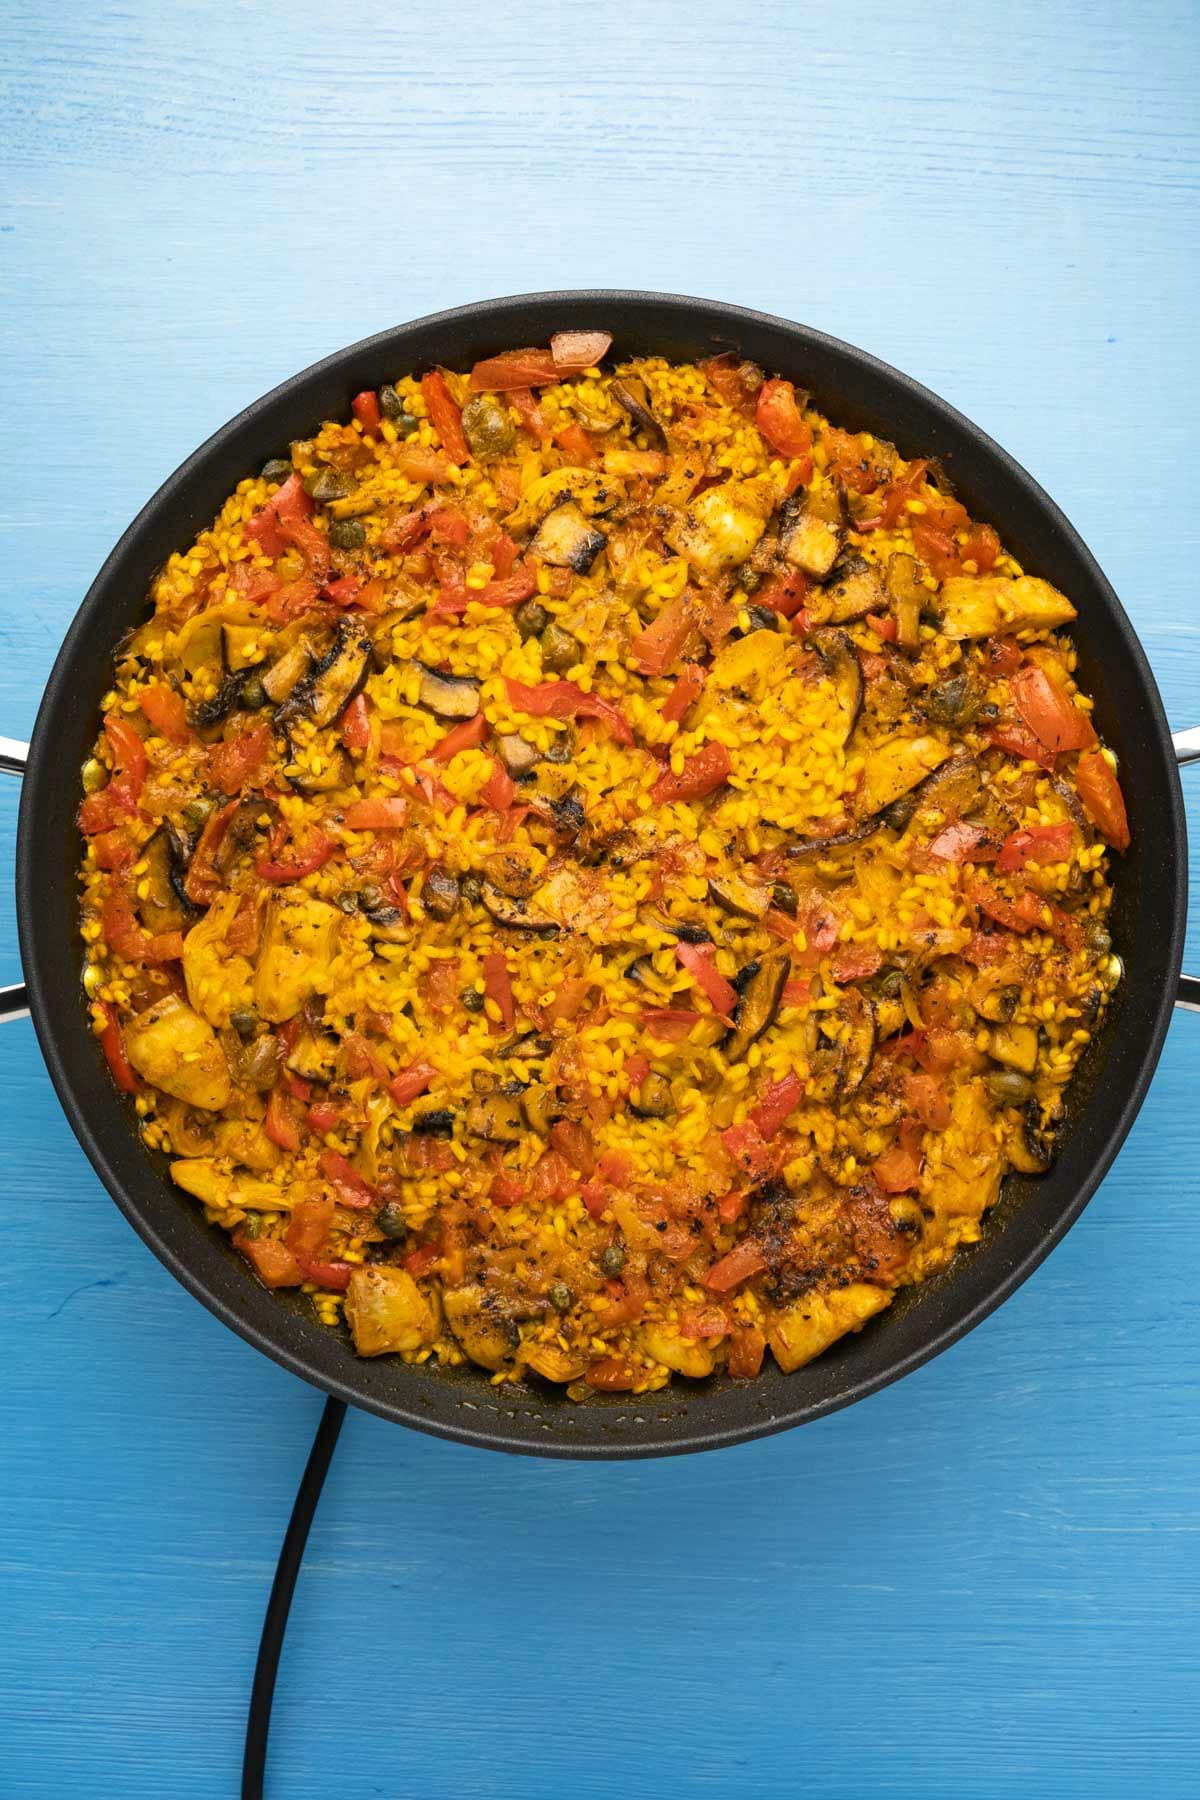 Cooked vegan paella in a pan.